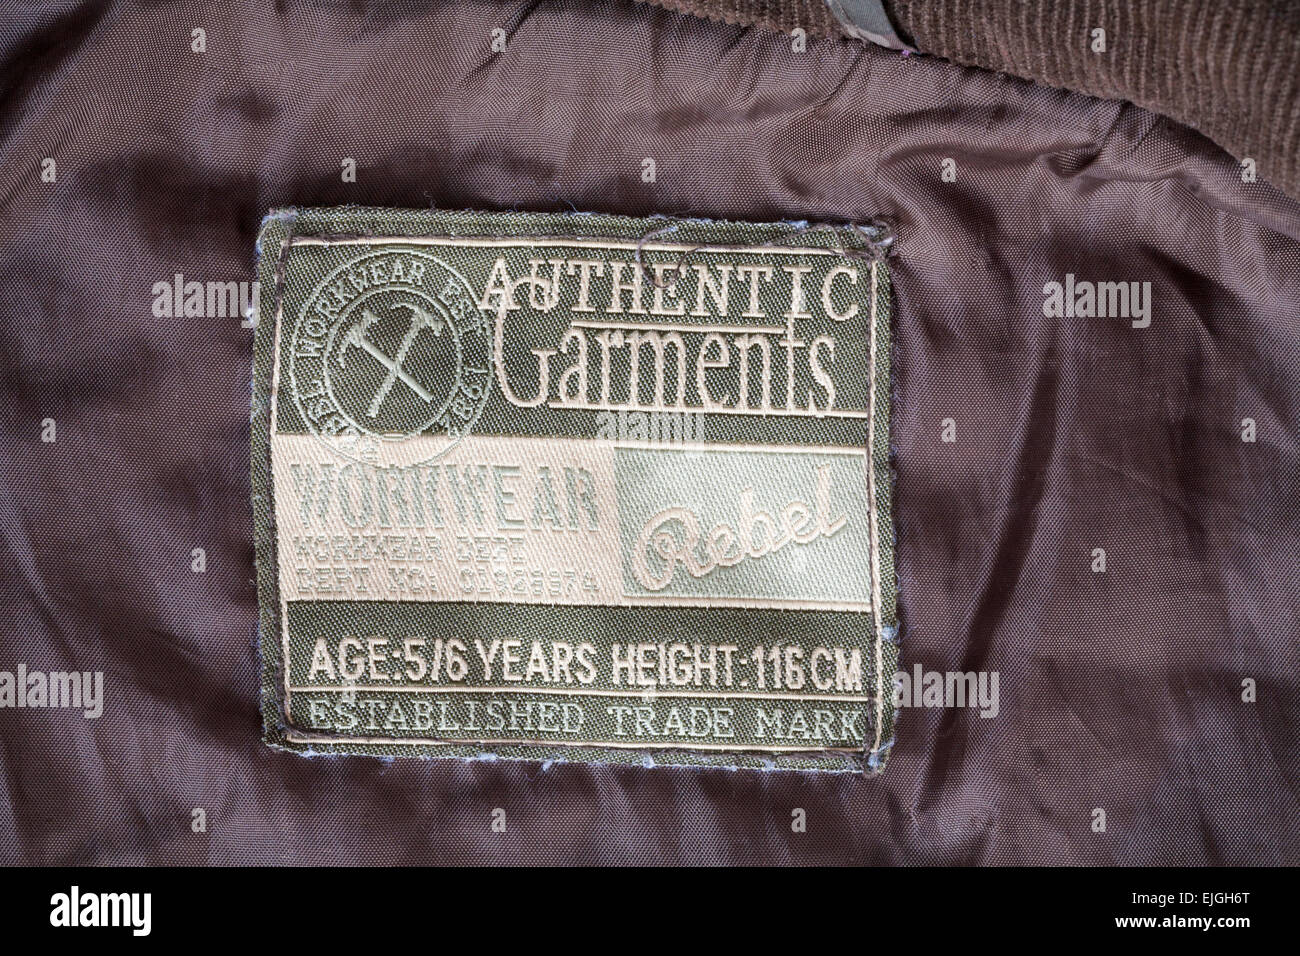 Rebel Workwear authentische Bekleidung Label im Kindes-Mantel Stockfoto